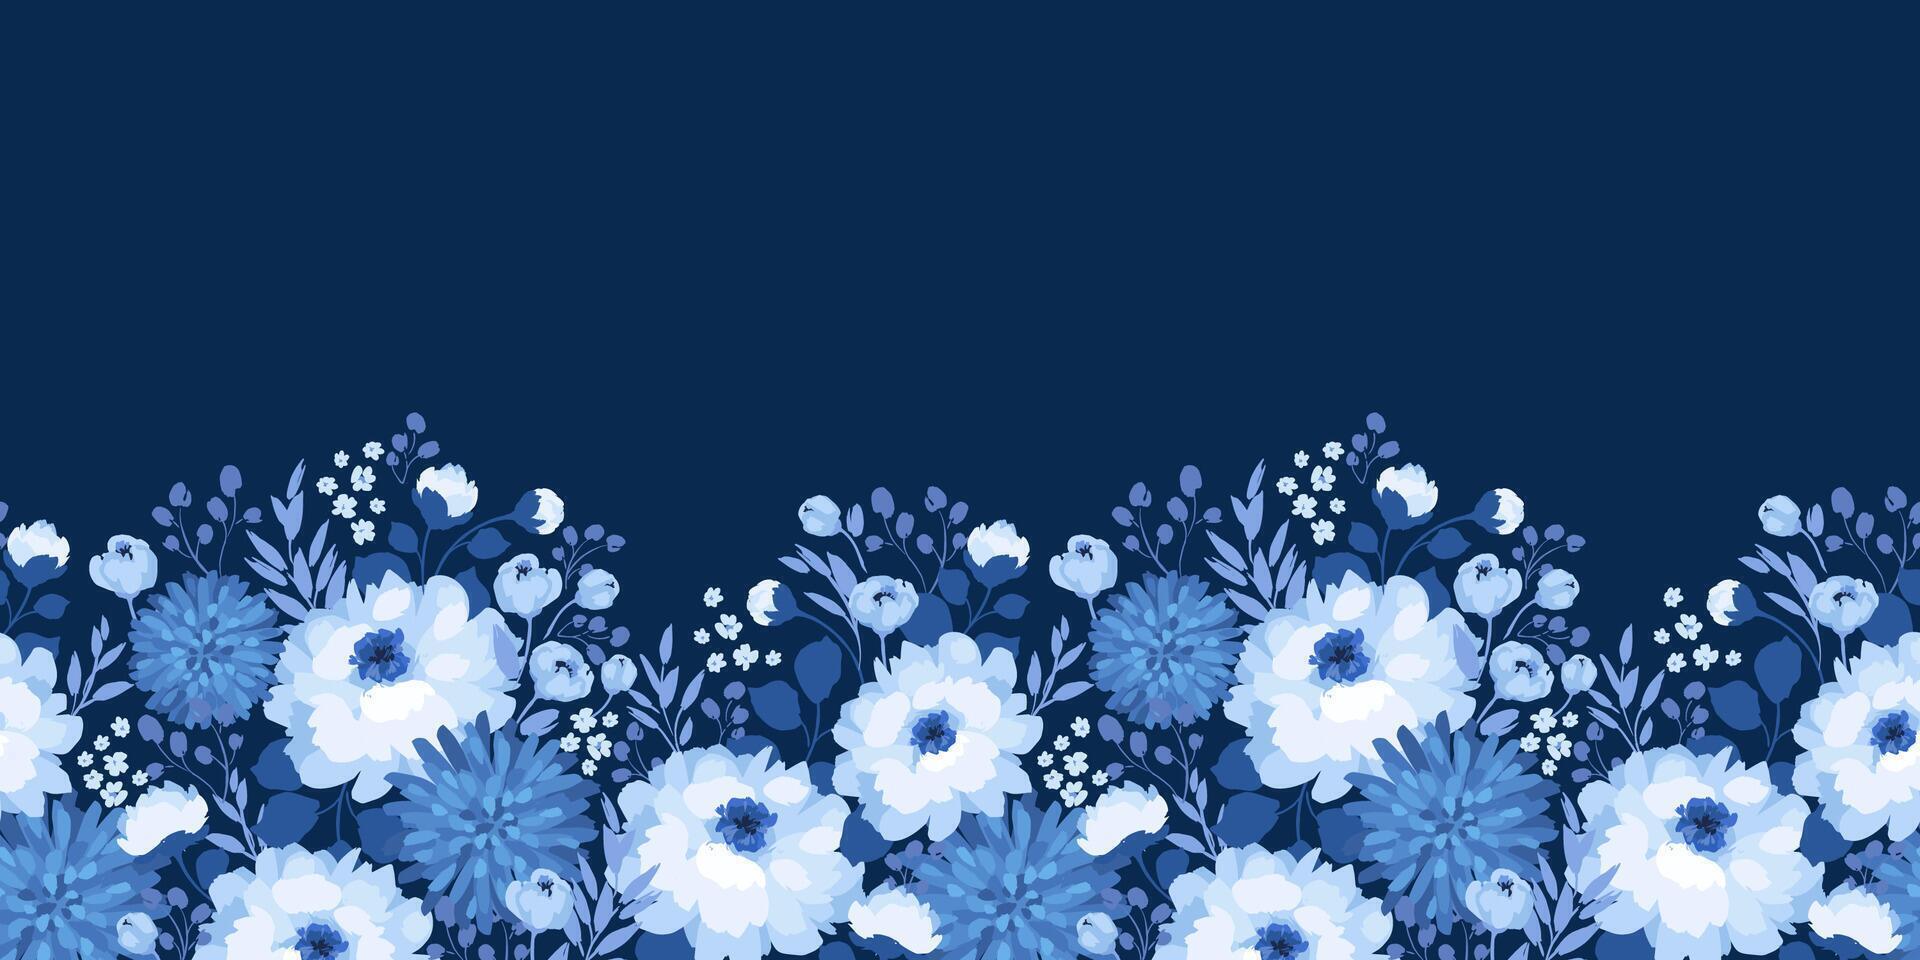 azul floral sin costura modelo. diseño para papel, cubrir, tela, interior decoración y otro usos vector